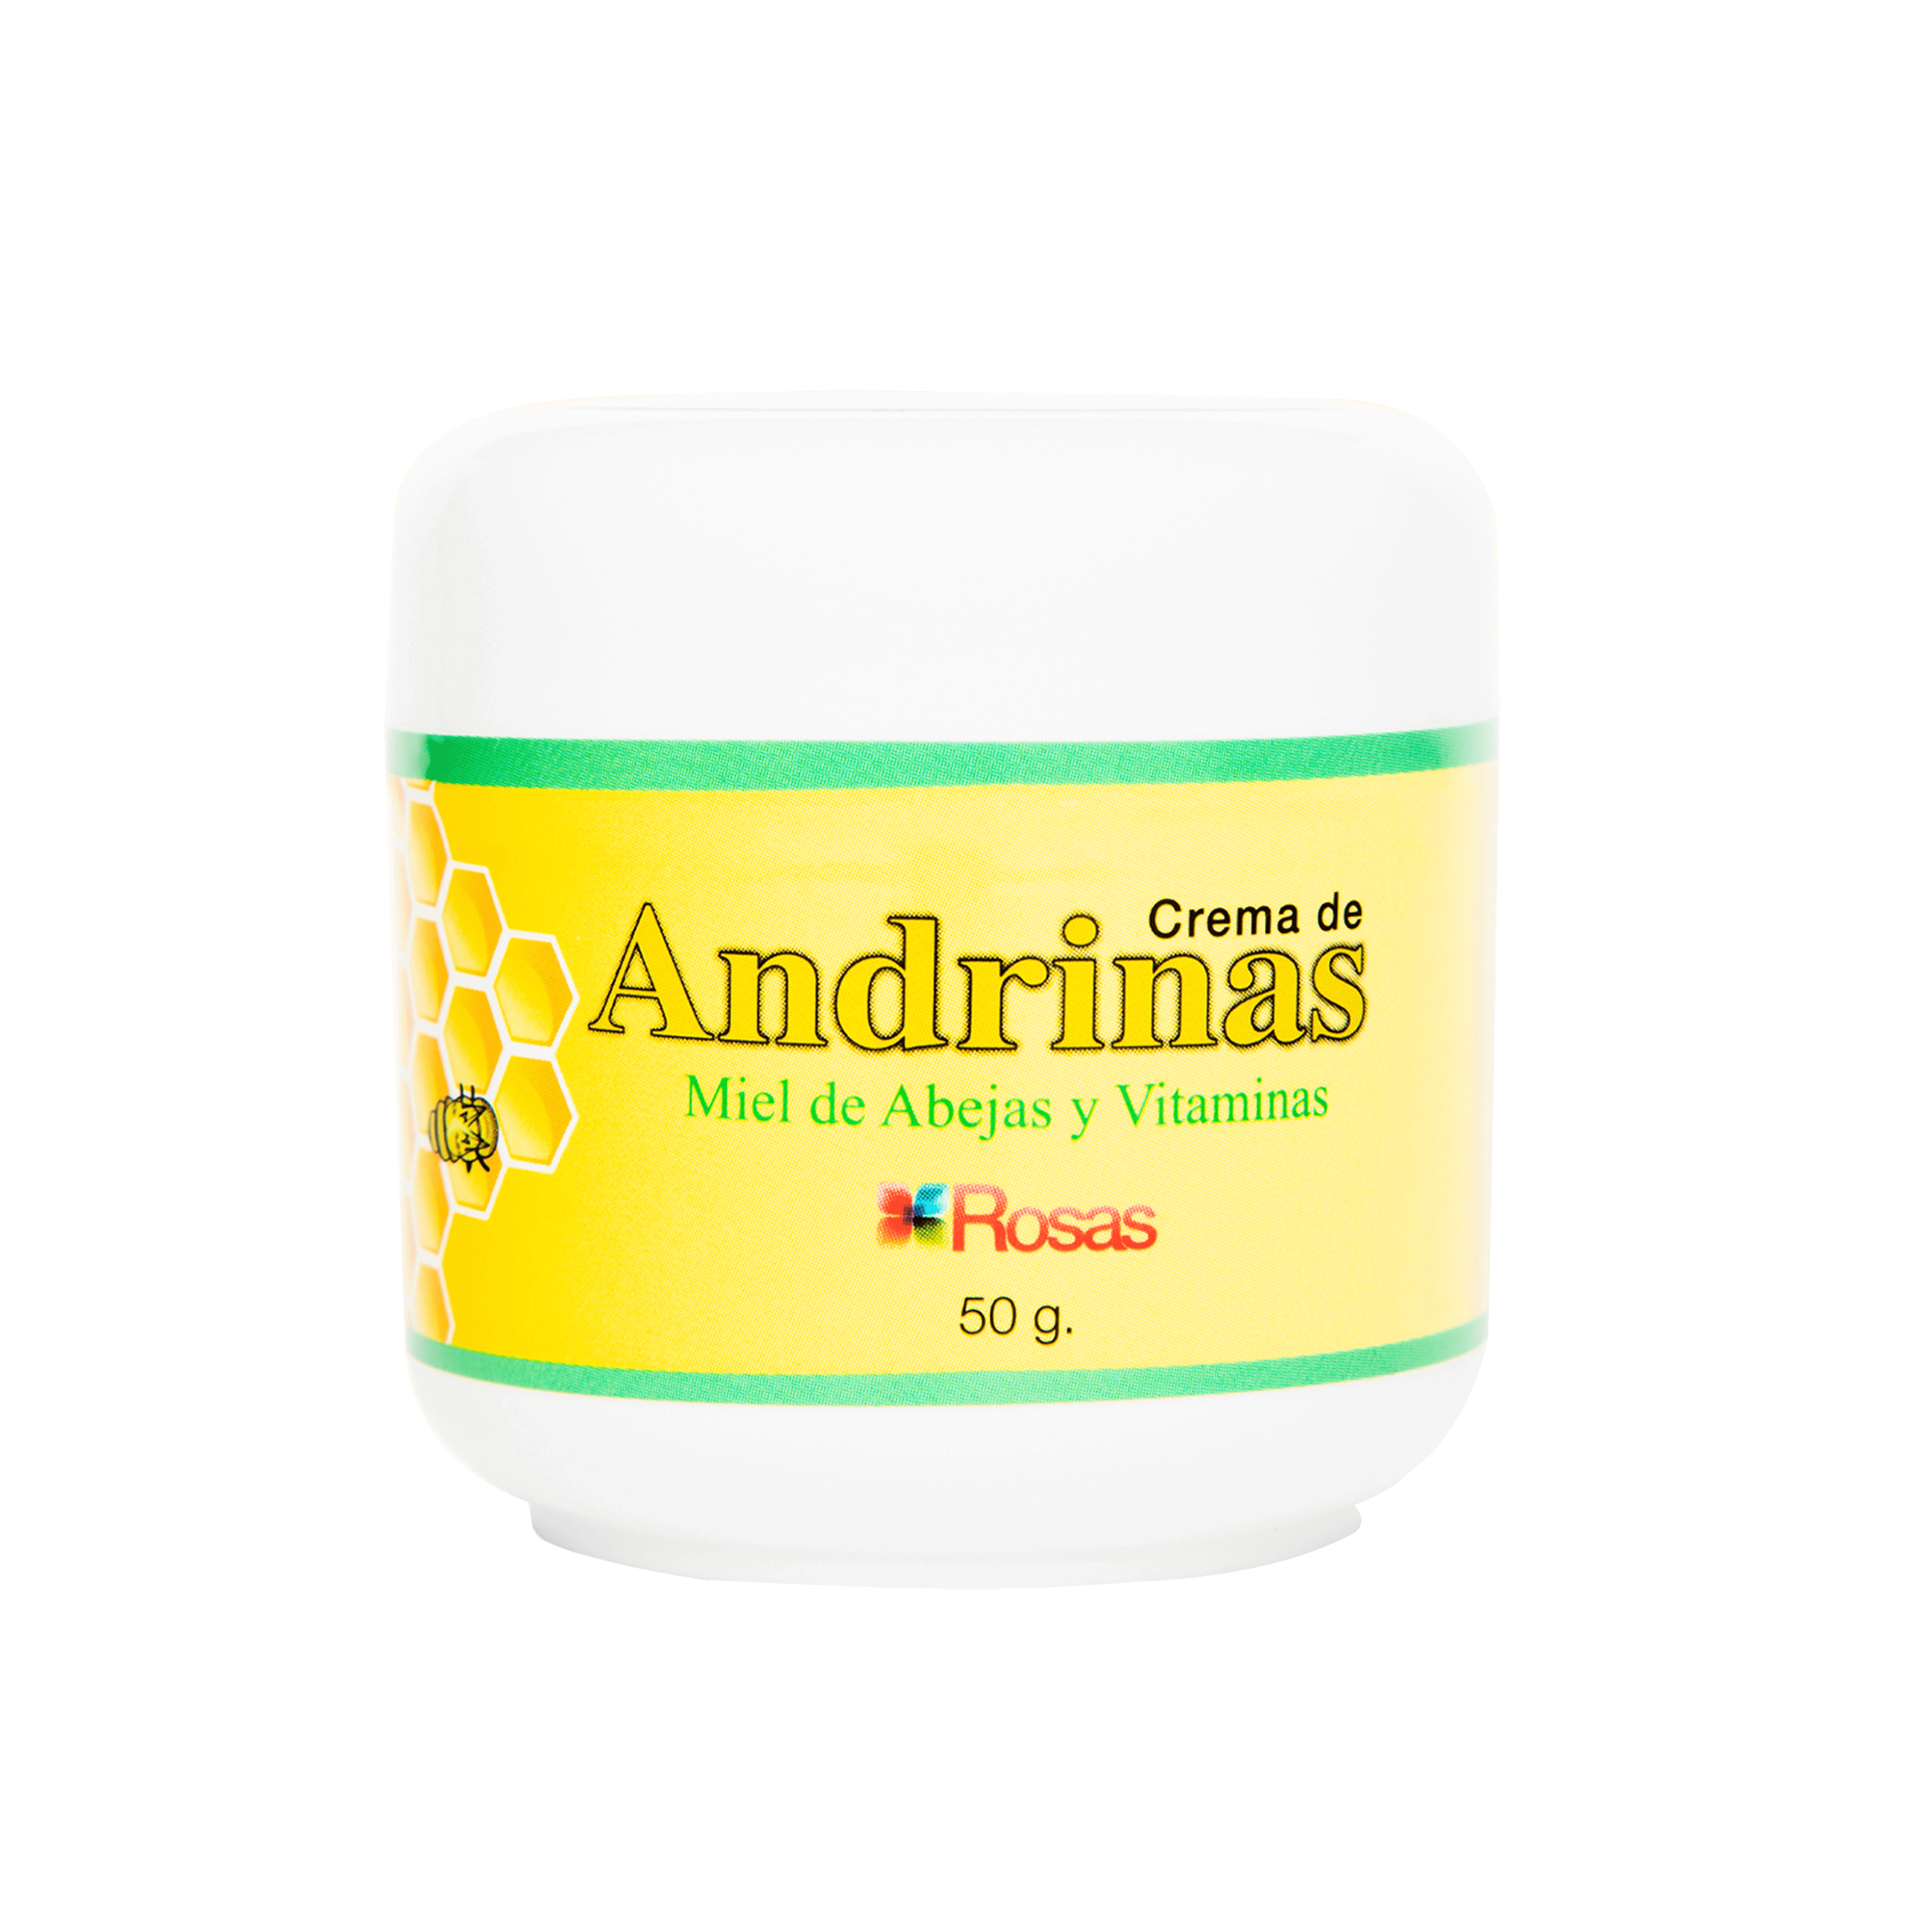 Crema de Andrinas Exfoliante con Miel de Abejas y Vitaminas * 50g